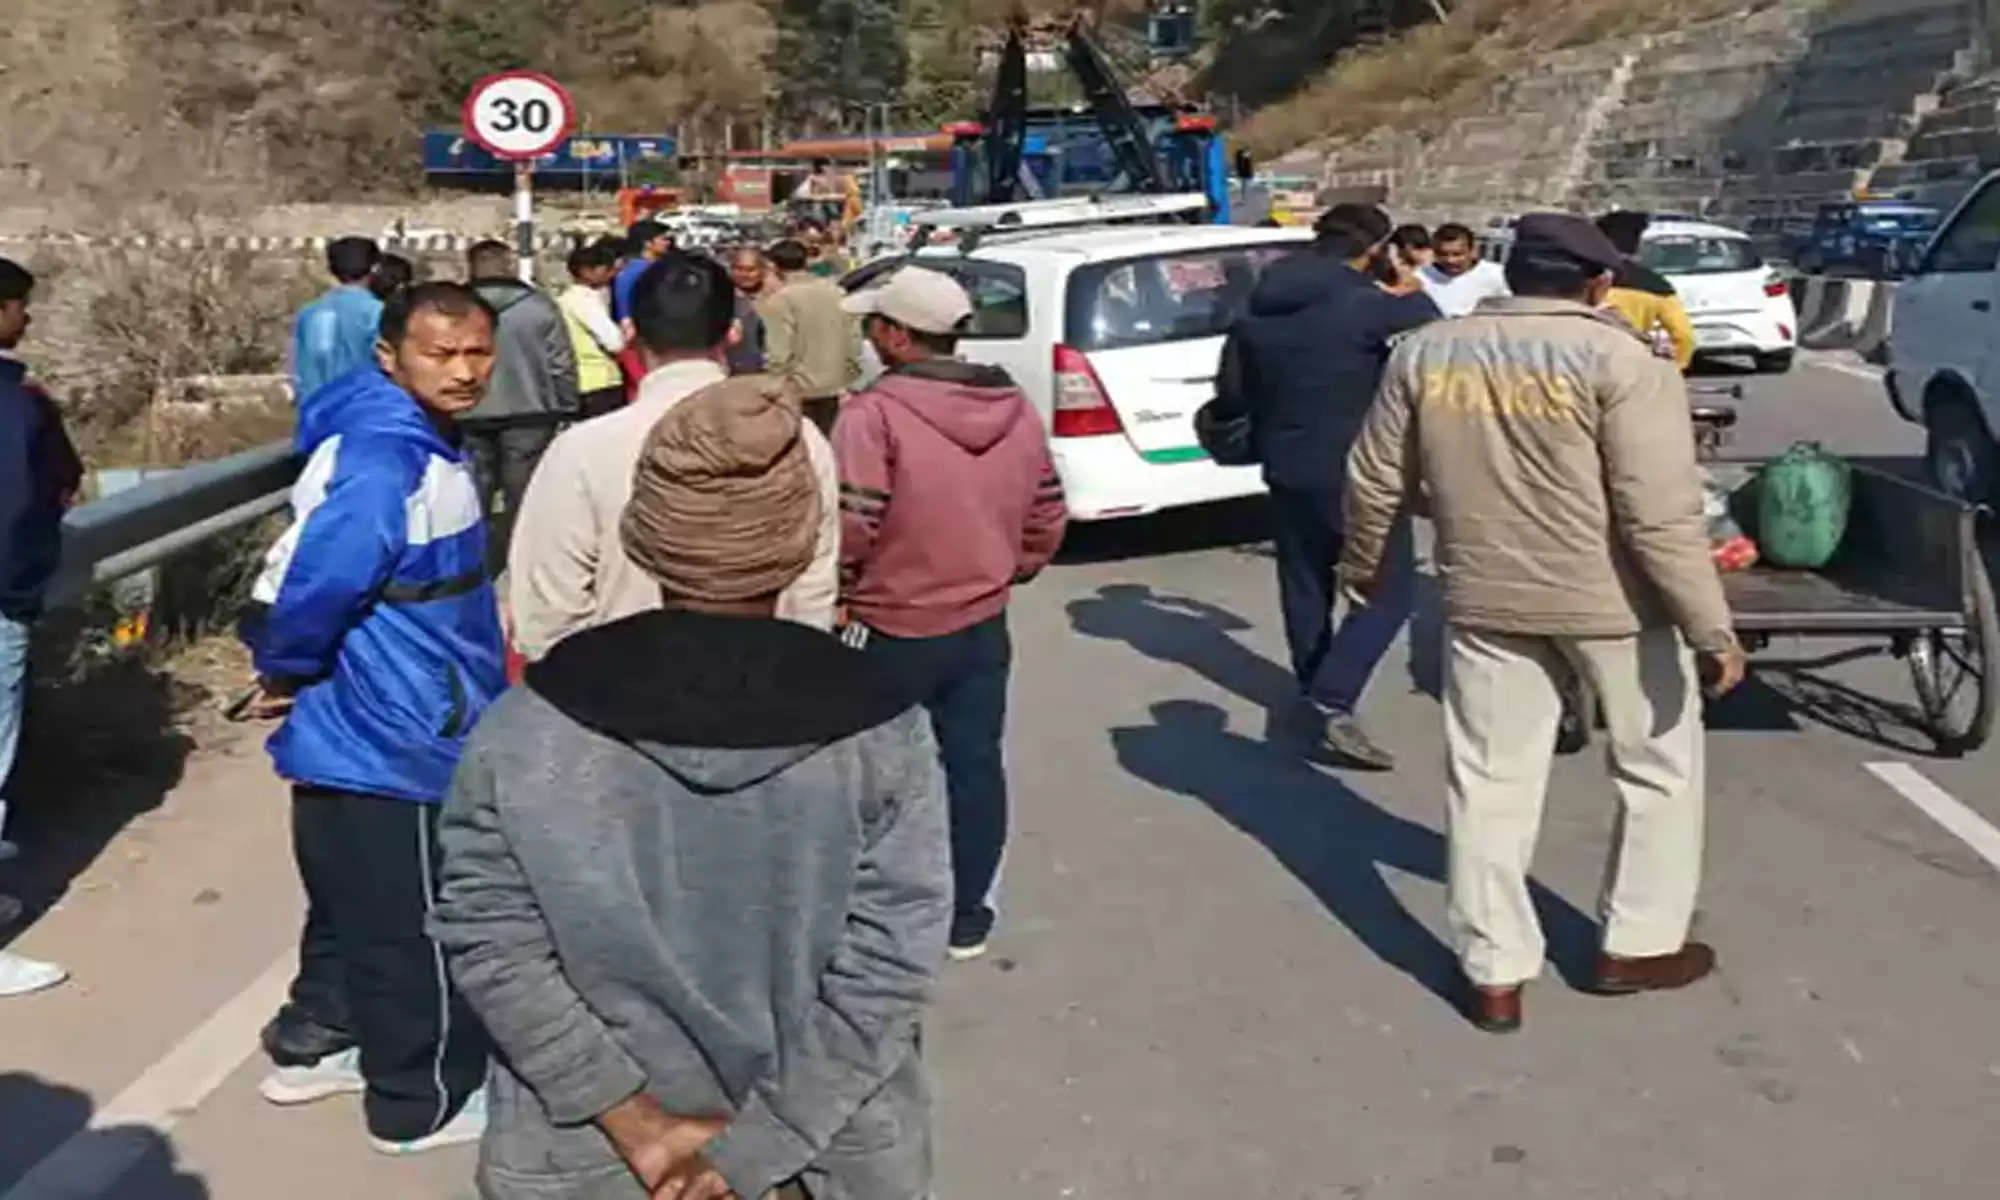 Solan Dharampur Innova Car Crushed People |Kalka Shimla National Highway| PGI Chandigarh हिमाचल प्रदेश के सोलन जिला में मंगलवार सुबह कालका-शिमला नेशनल हाईवे पर इनोवा गाड़ी ने 9 मजदूरों को कुचल दिया। इनमें से 5 मजदूरों की मौके पर मौत हो गई। 4  मजदूर गंभीर रूप से घायल हो गए हैं। इनमें से 3 को गंभीर हालत में PGI चंडीगढ़ रेफर कर दिया गया है। एक को क्षेत्रीय अस्पताल सोलन लाया गया है।